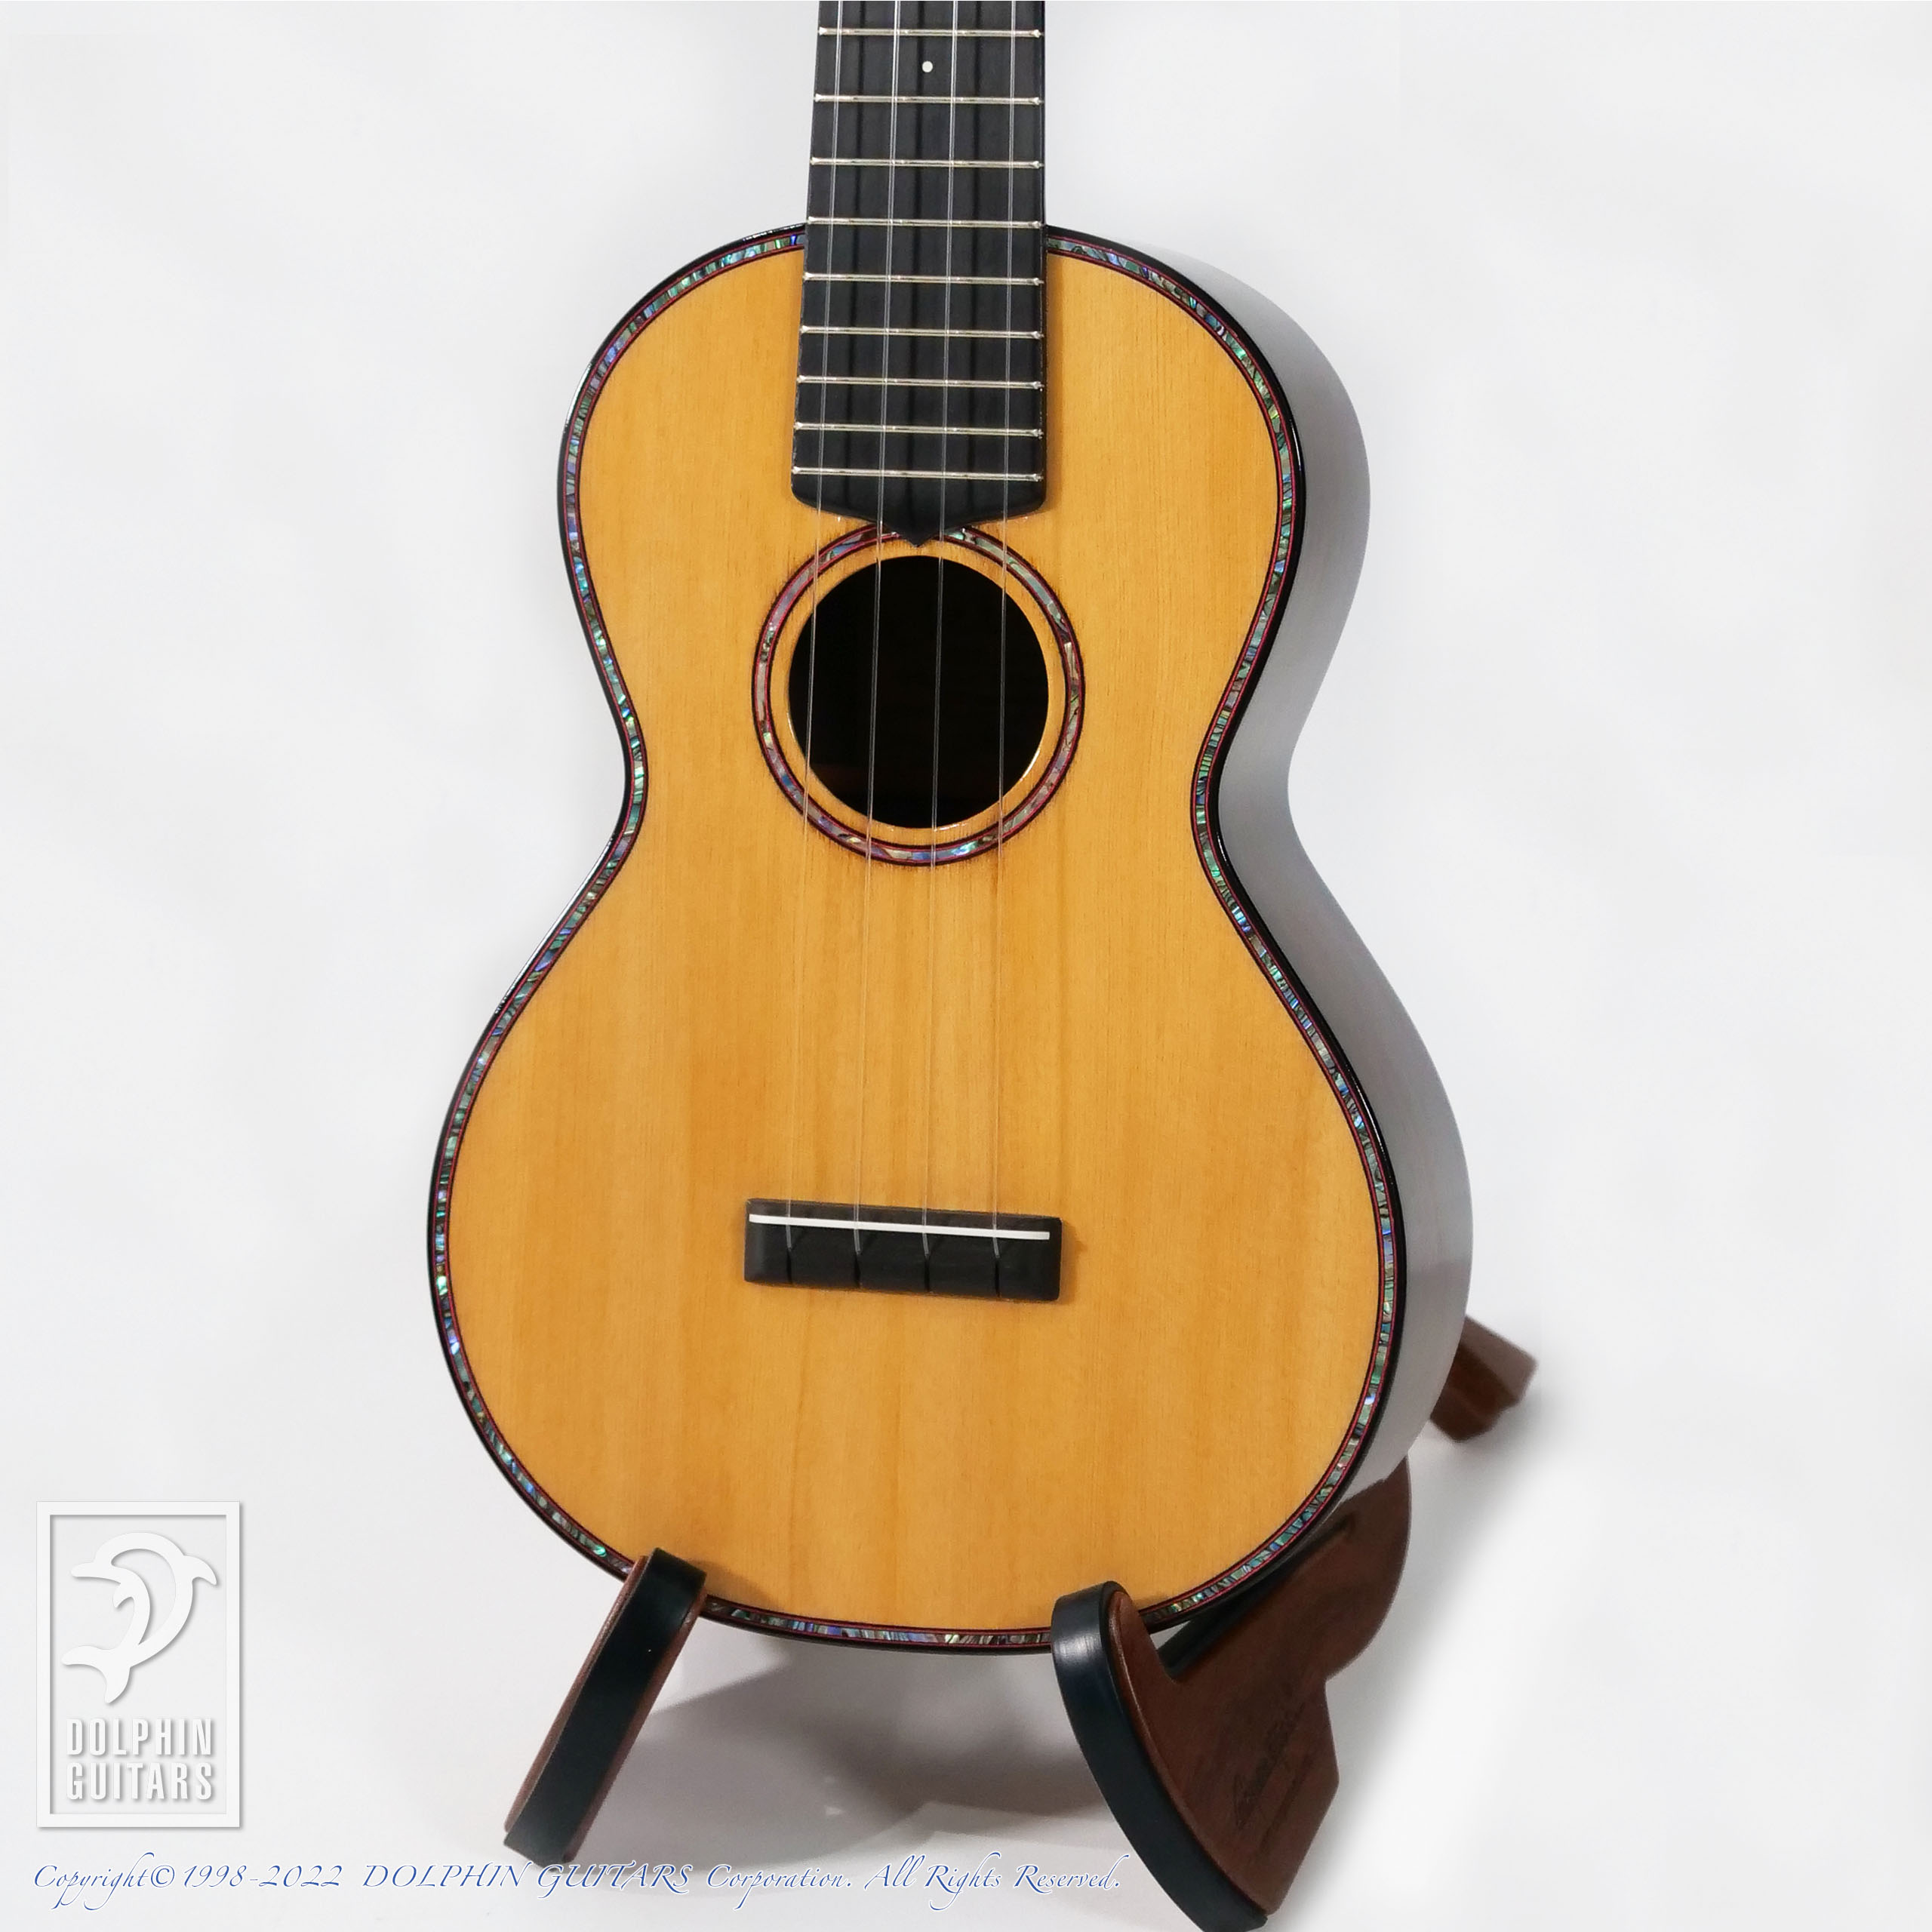 tkitki ukulele ECO-C M E コンサートウクレレ オール単板 エボニー指板 日本製 S N720 ティキティキ・ウクレレ